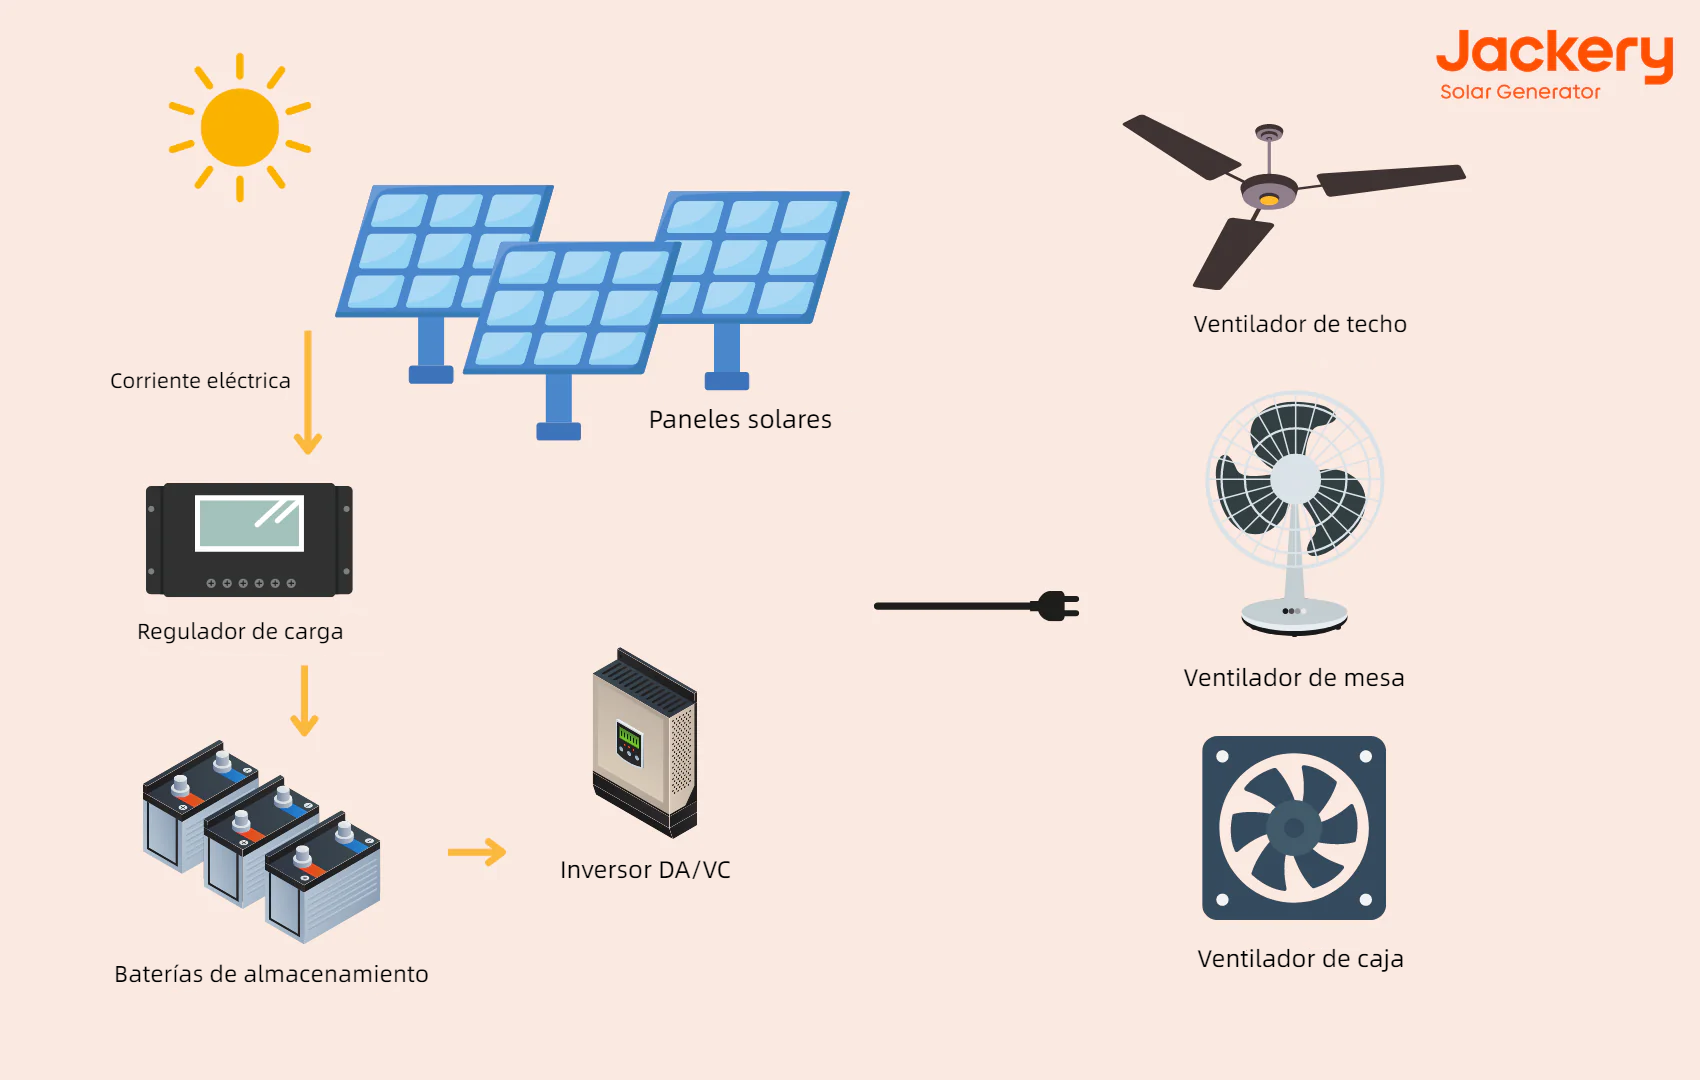 ¿Cómo funciona un Ventilador Solar?